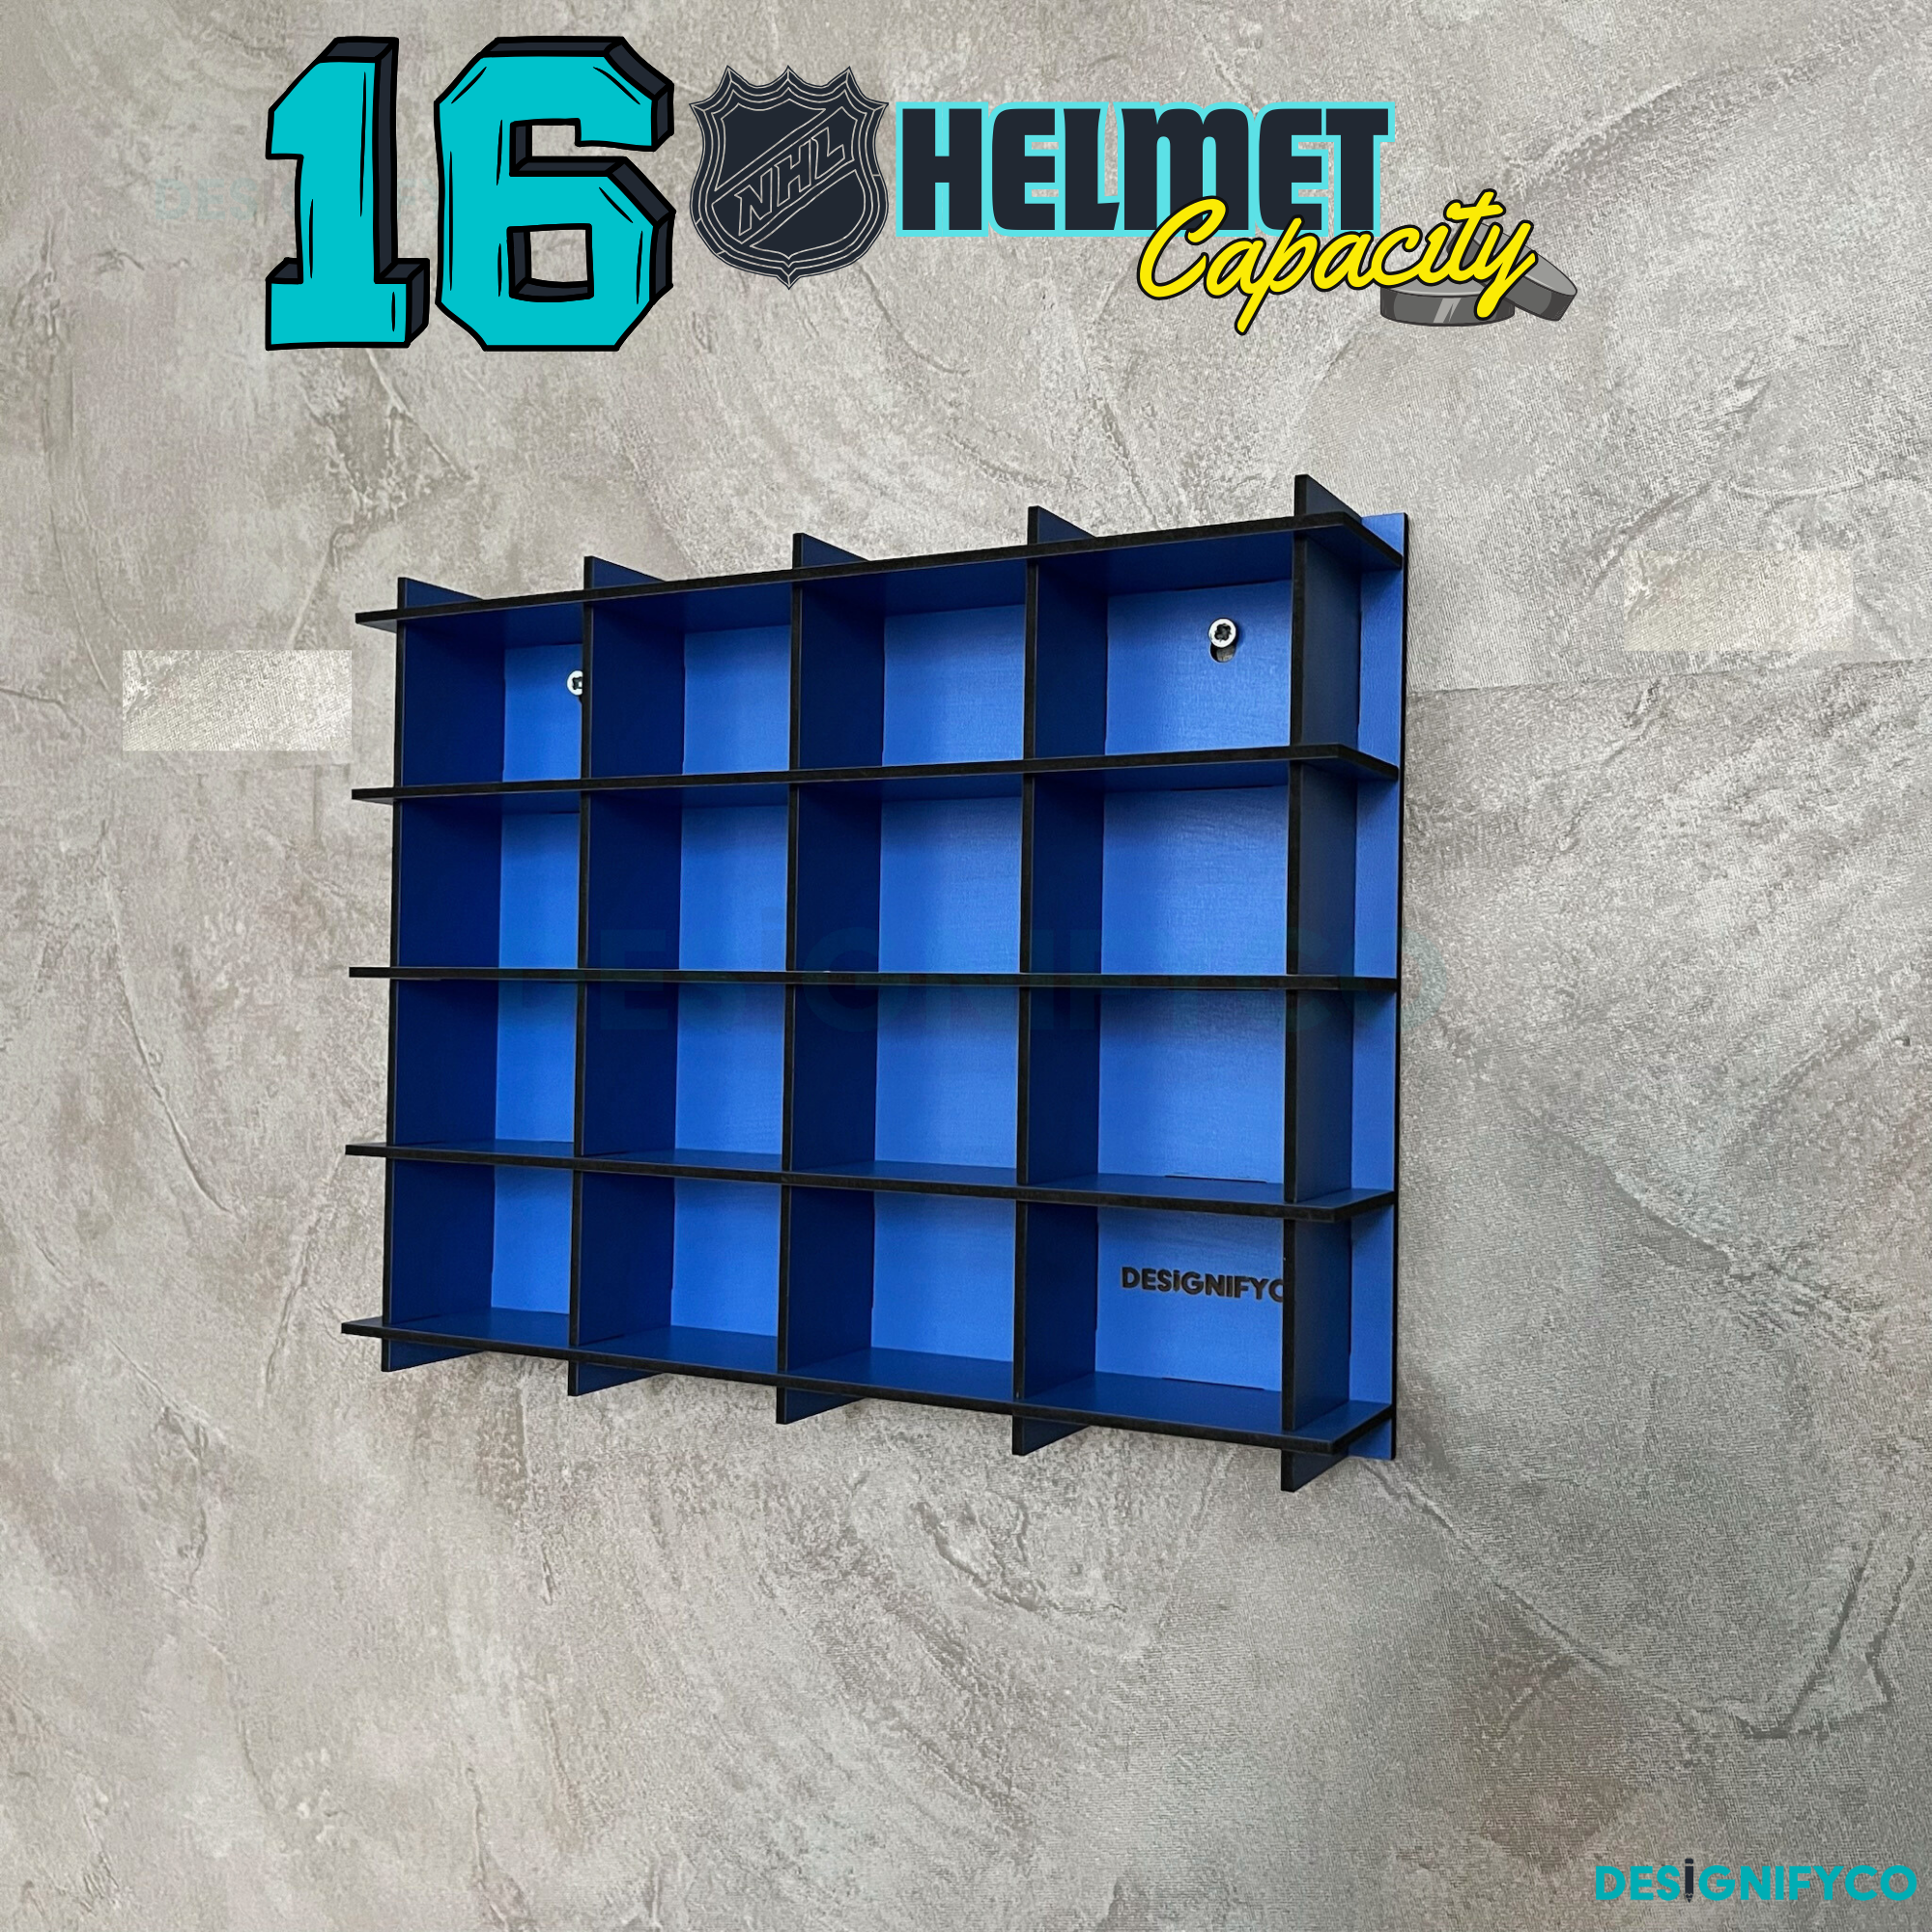 BLUE NHL Mini Helmet 16 Display Case